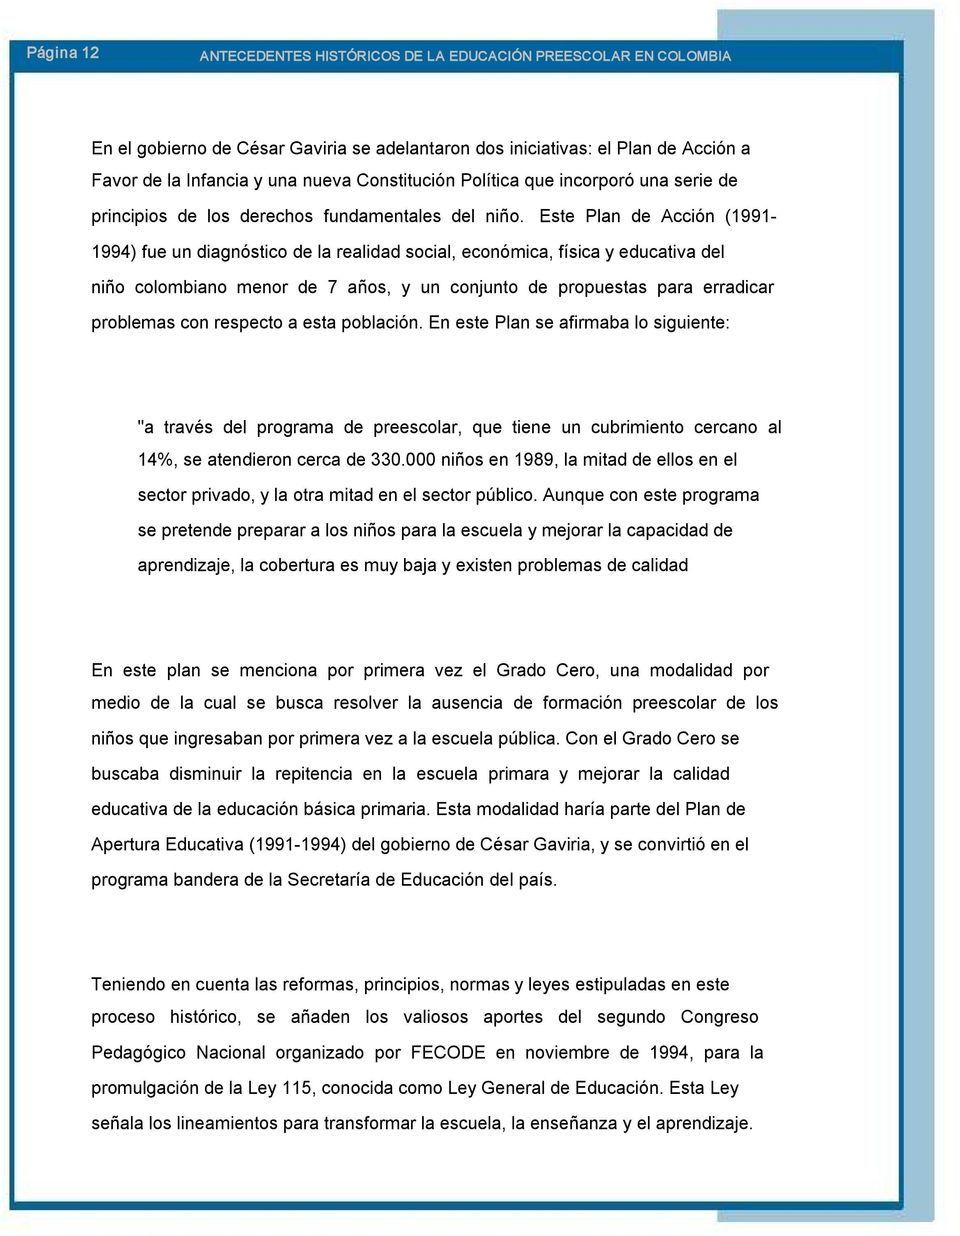 Este Plan de Acción (1991 1994) fue un diagnóstico de la realidad social, económica, física y educativa del niño colombiano menor de 7 años, y un conjunto de propuestas para erradicar problemas con